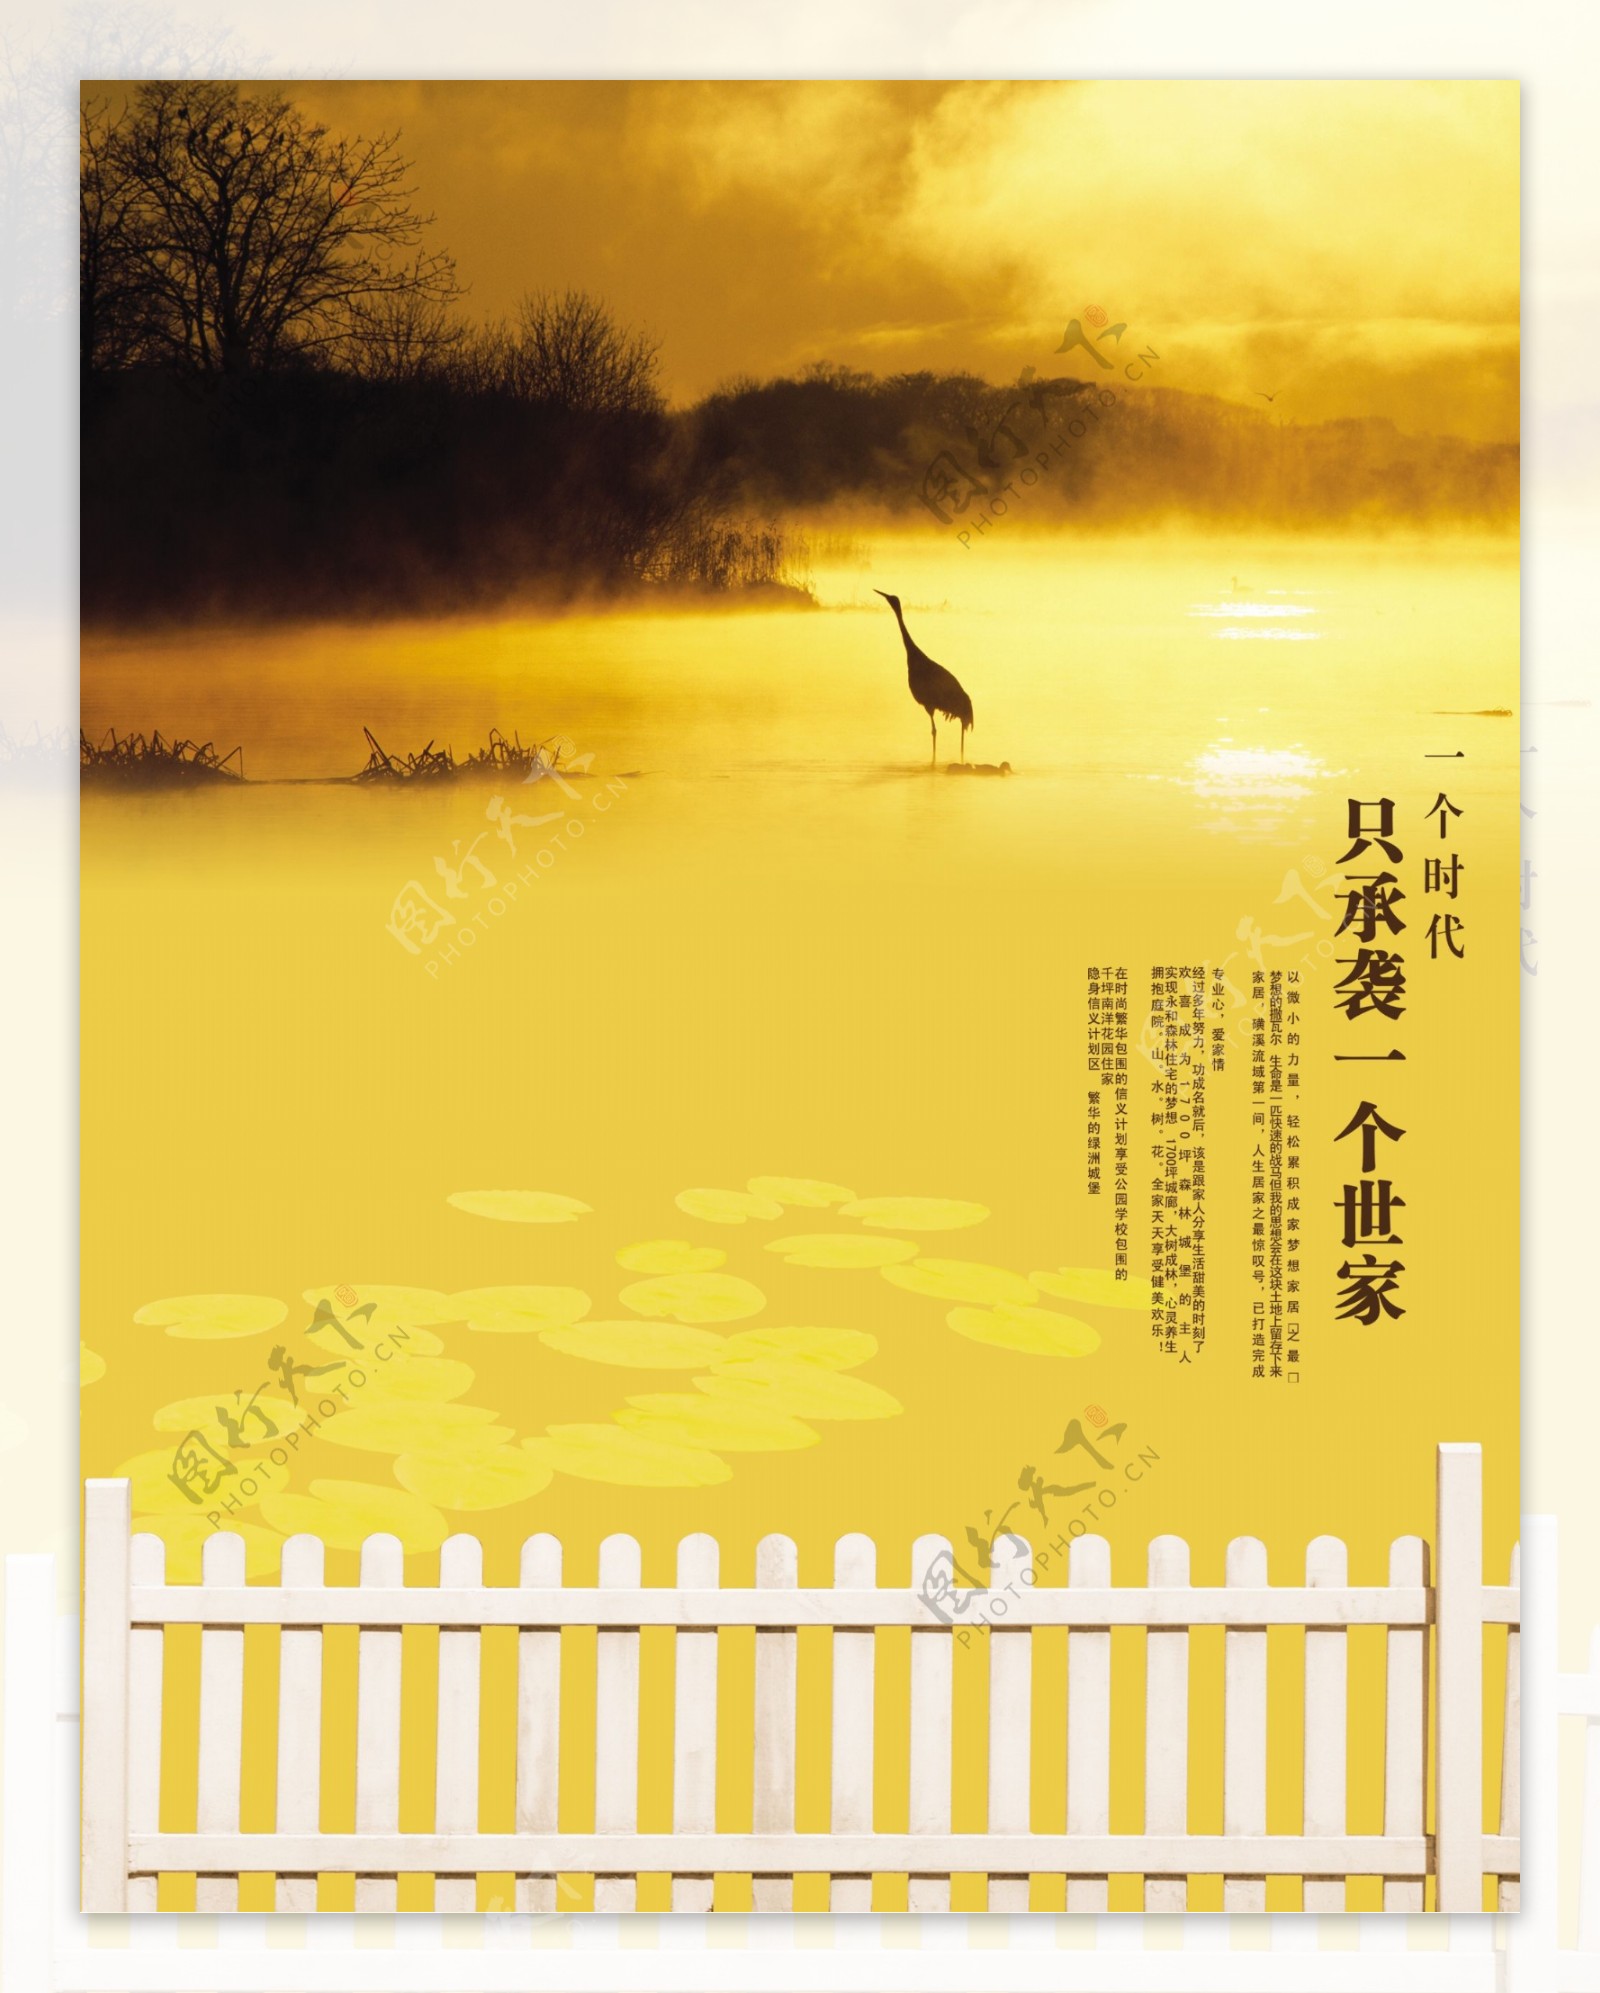 湖边夕阳自然风景创意宣传海报